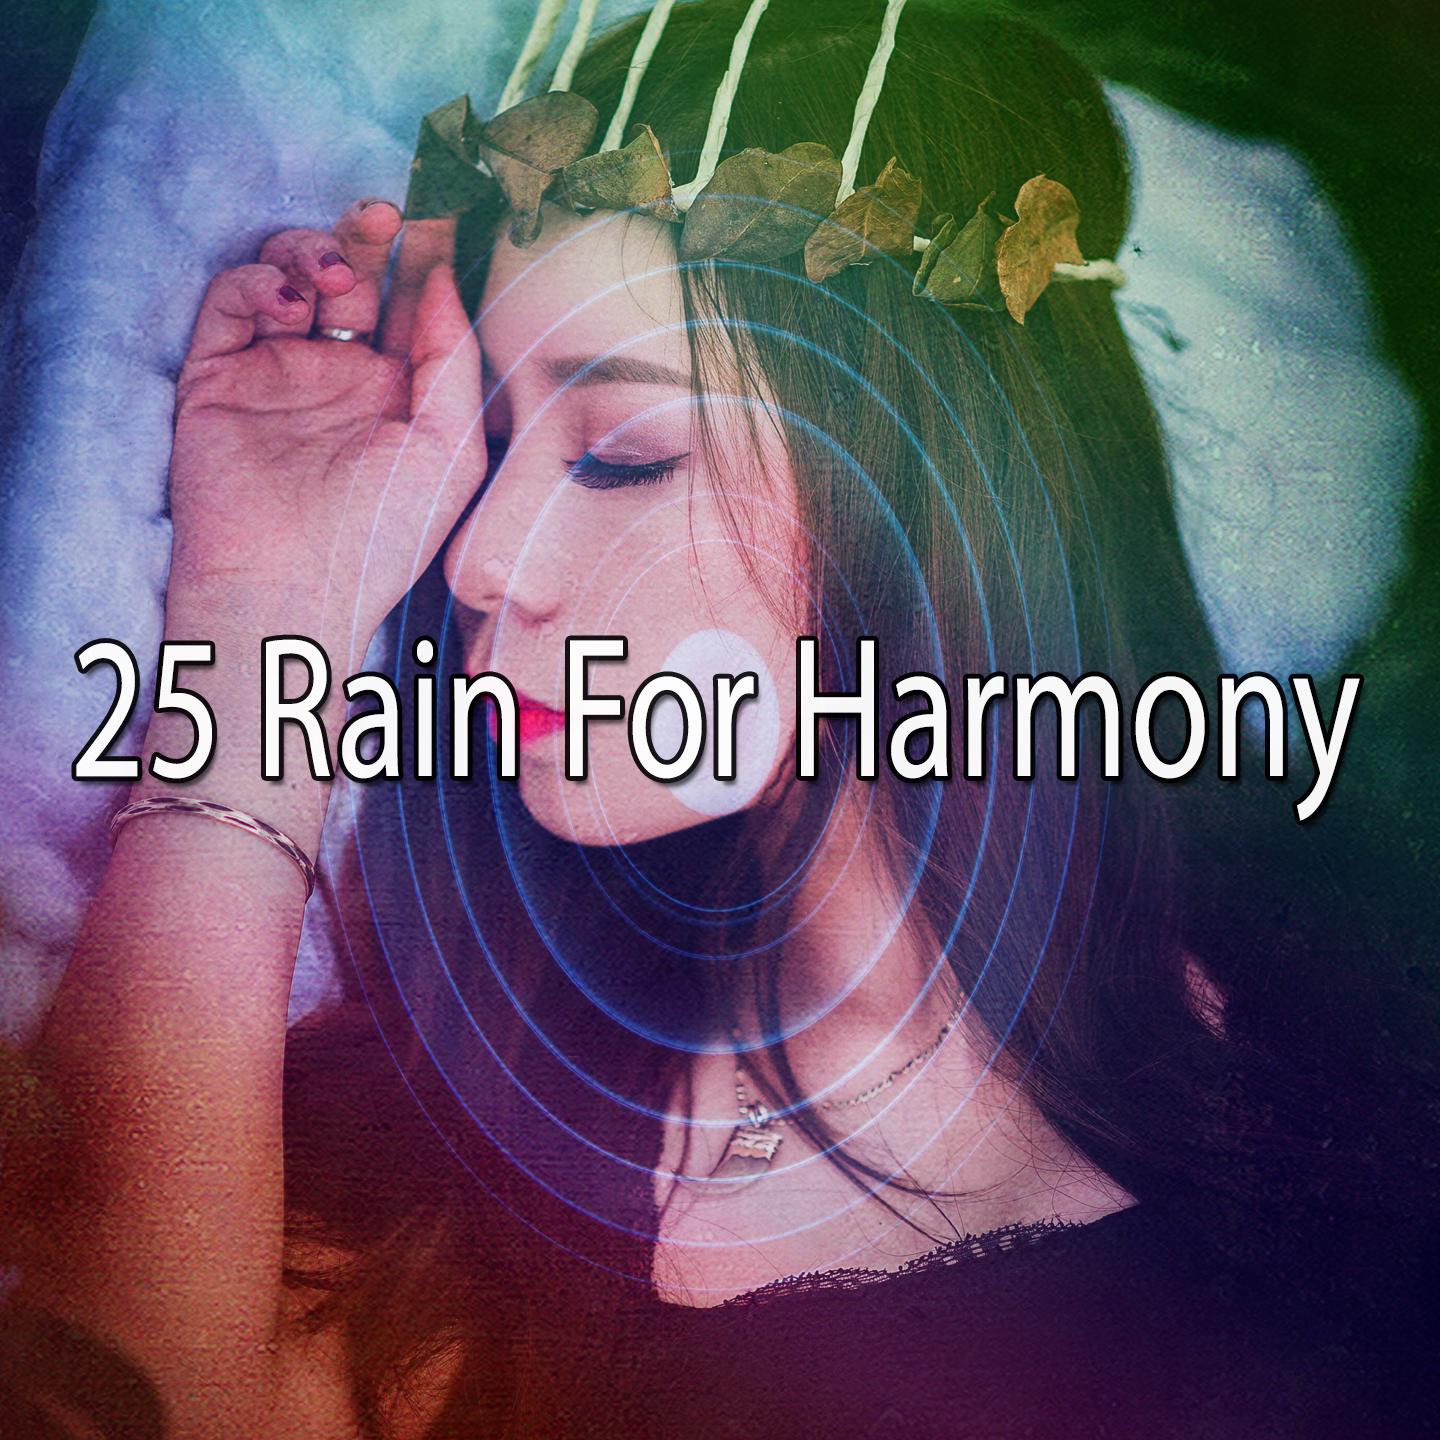 25 Rain for Harmony